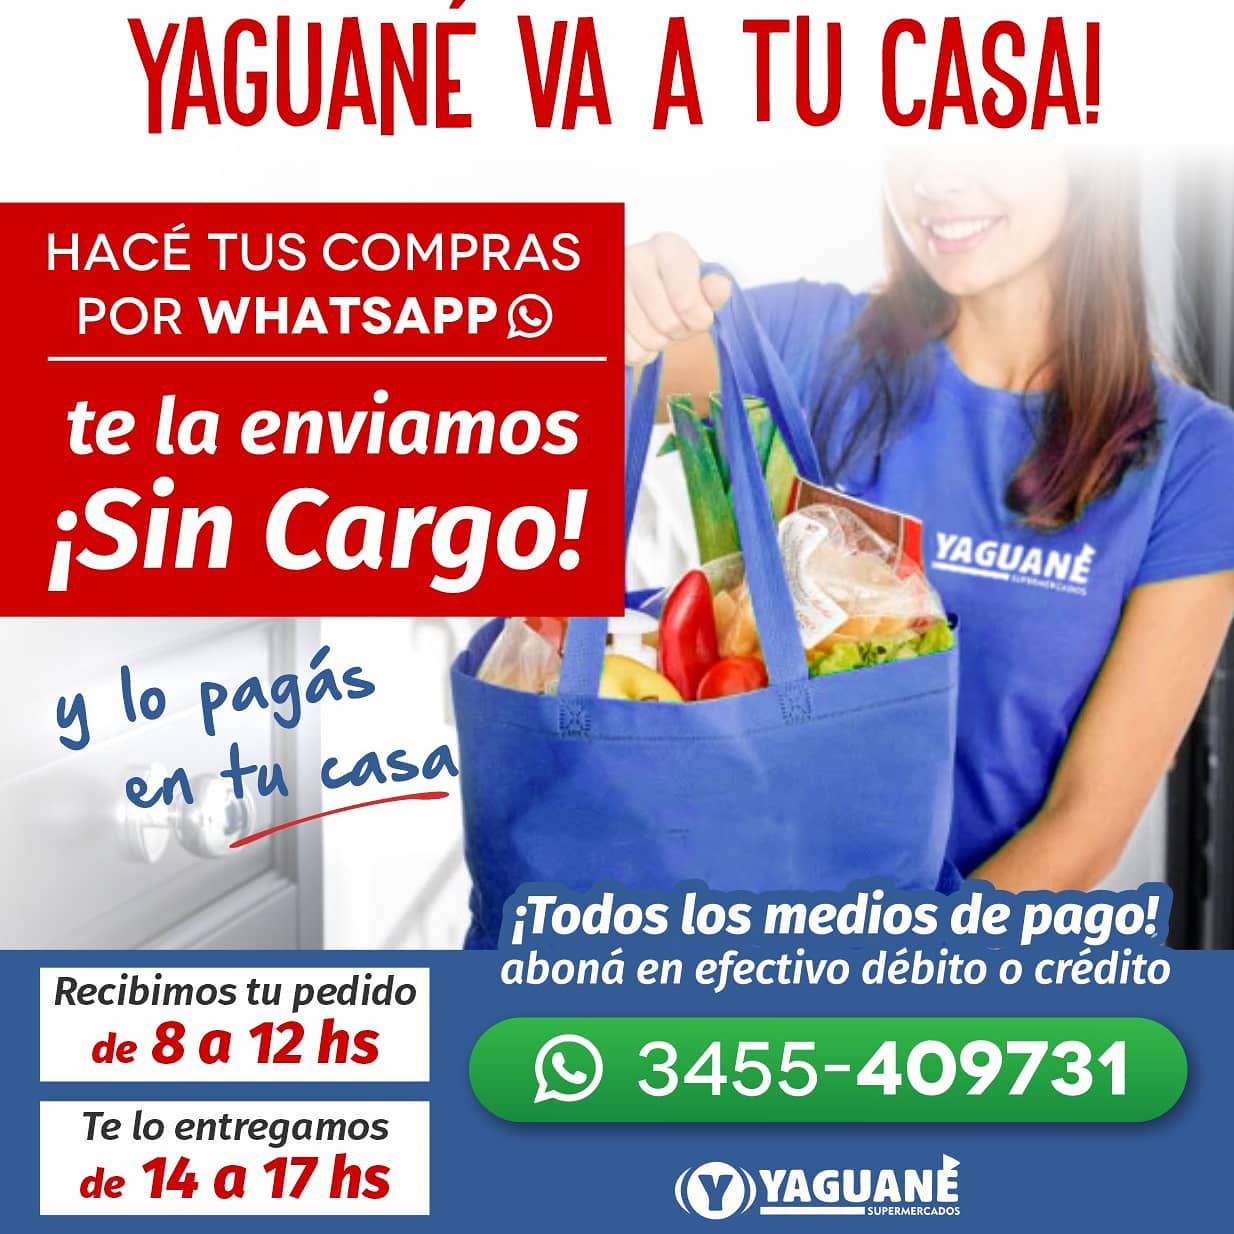 Imagen de Yaguané Supermercados, publicado en sus redes sociales.